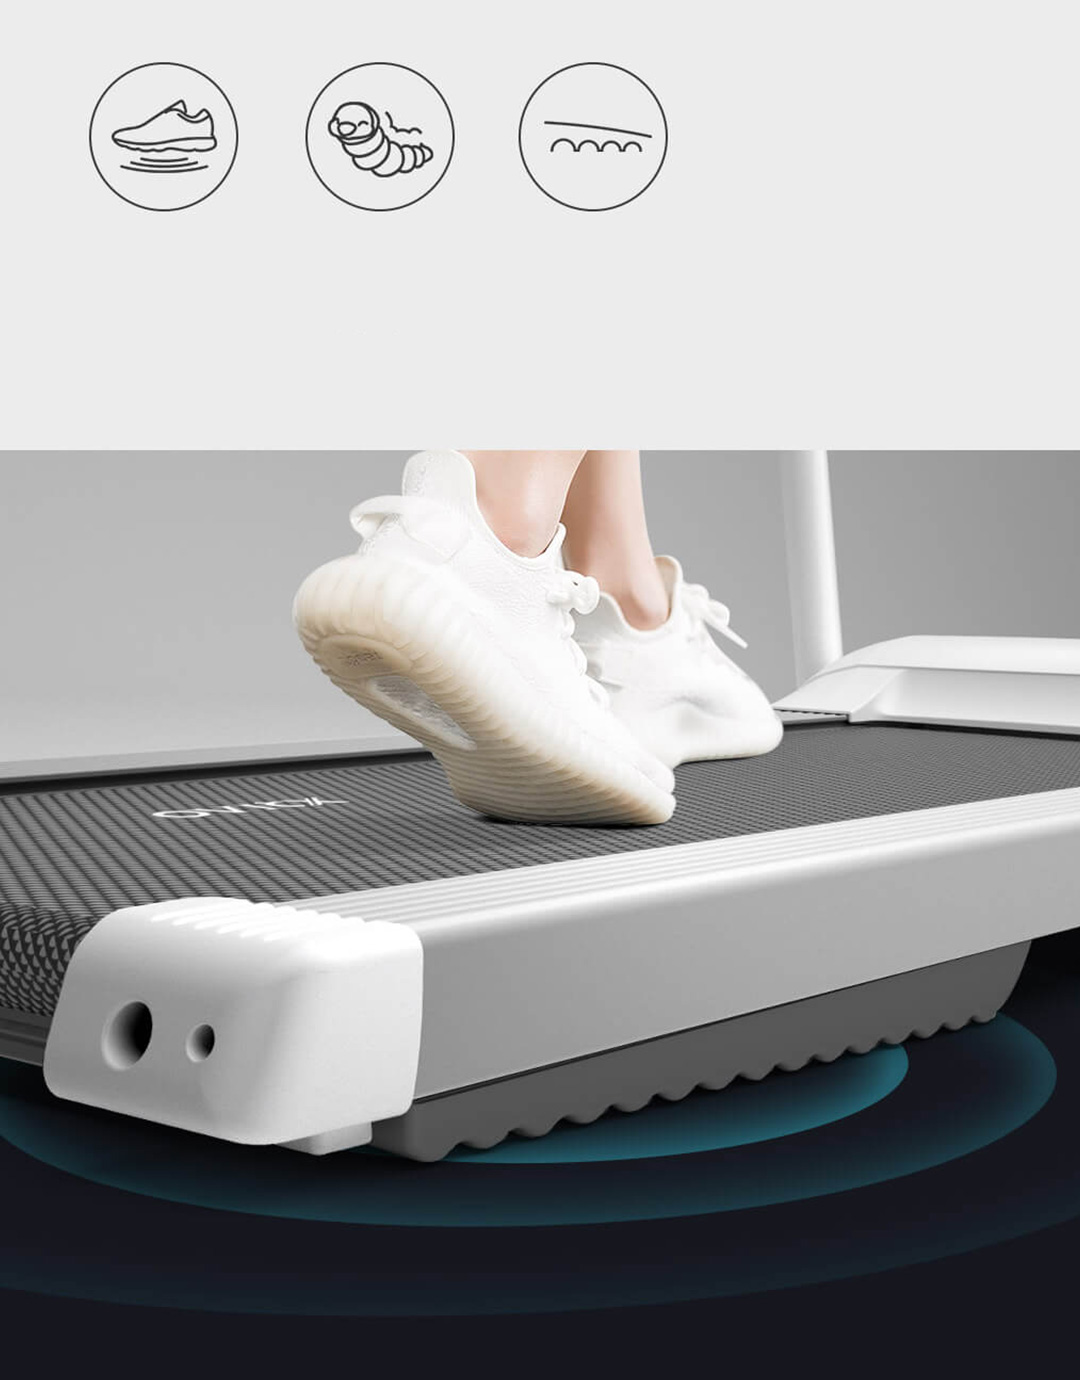 Dontz Smart Treadmill A1X & Smartrun